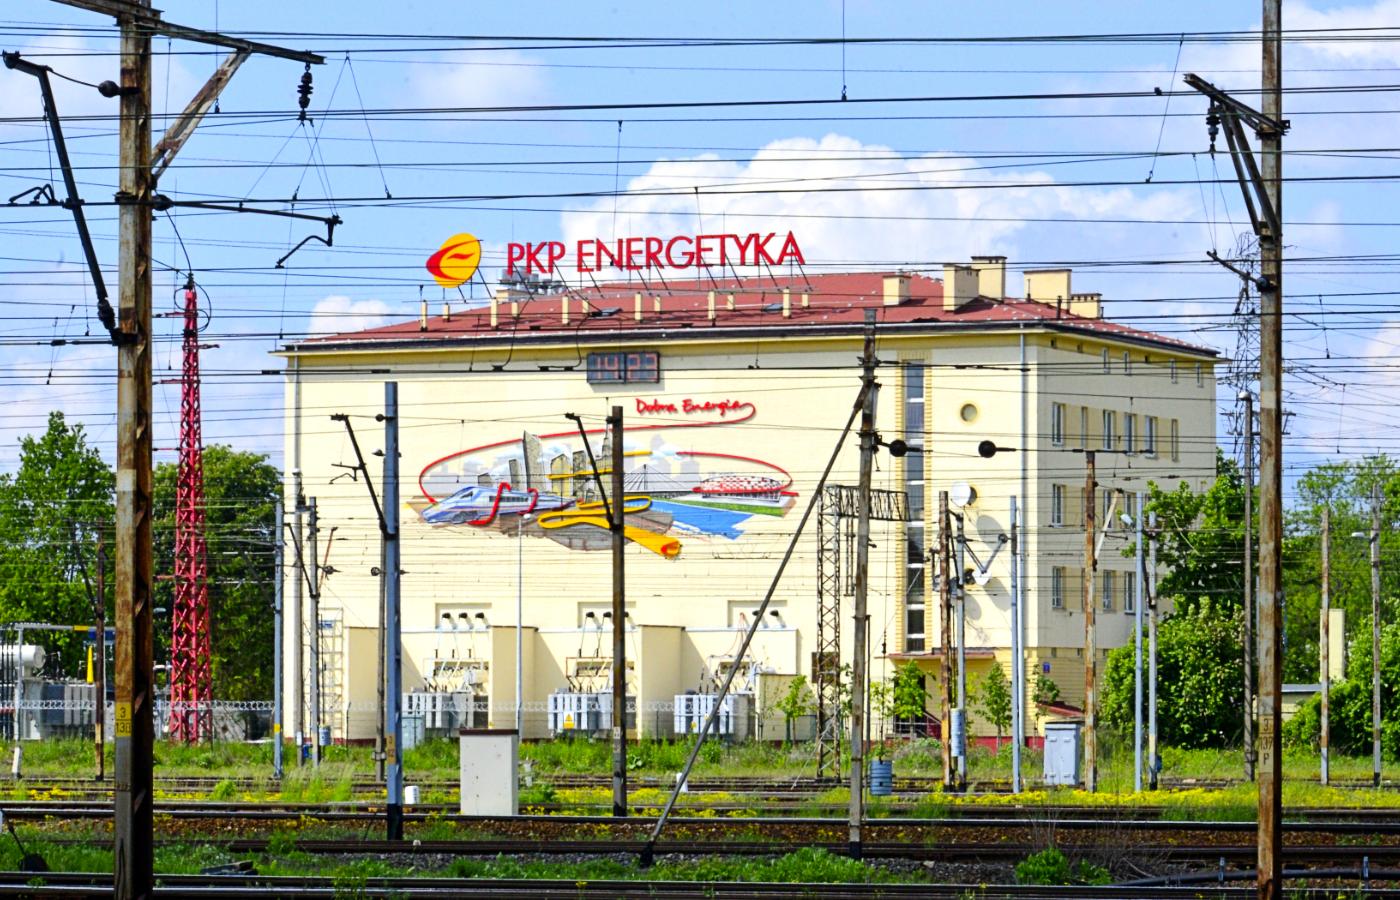 Siedziba spółki PKP Energetyka, 2015 r.